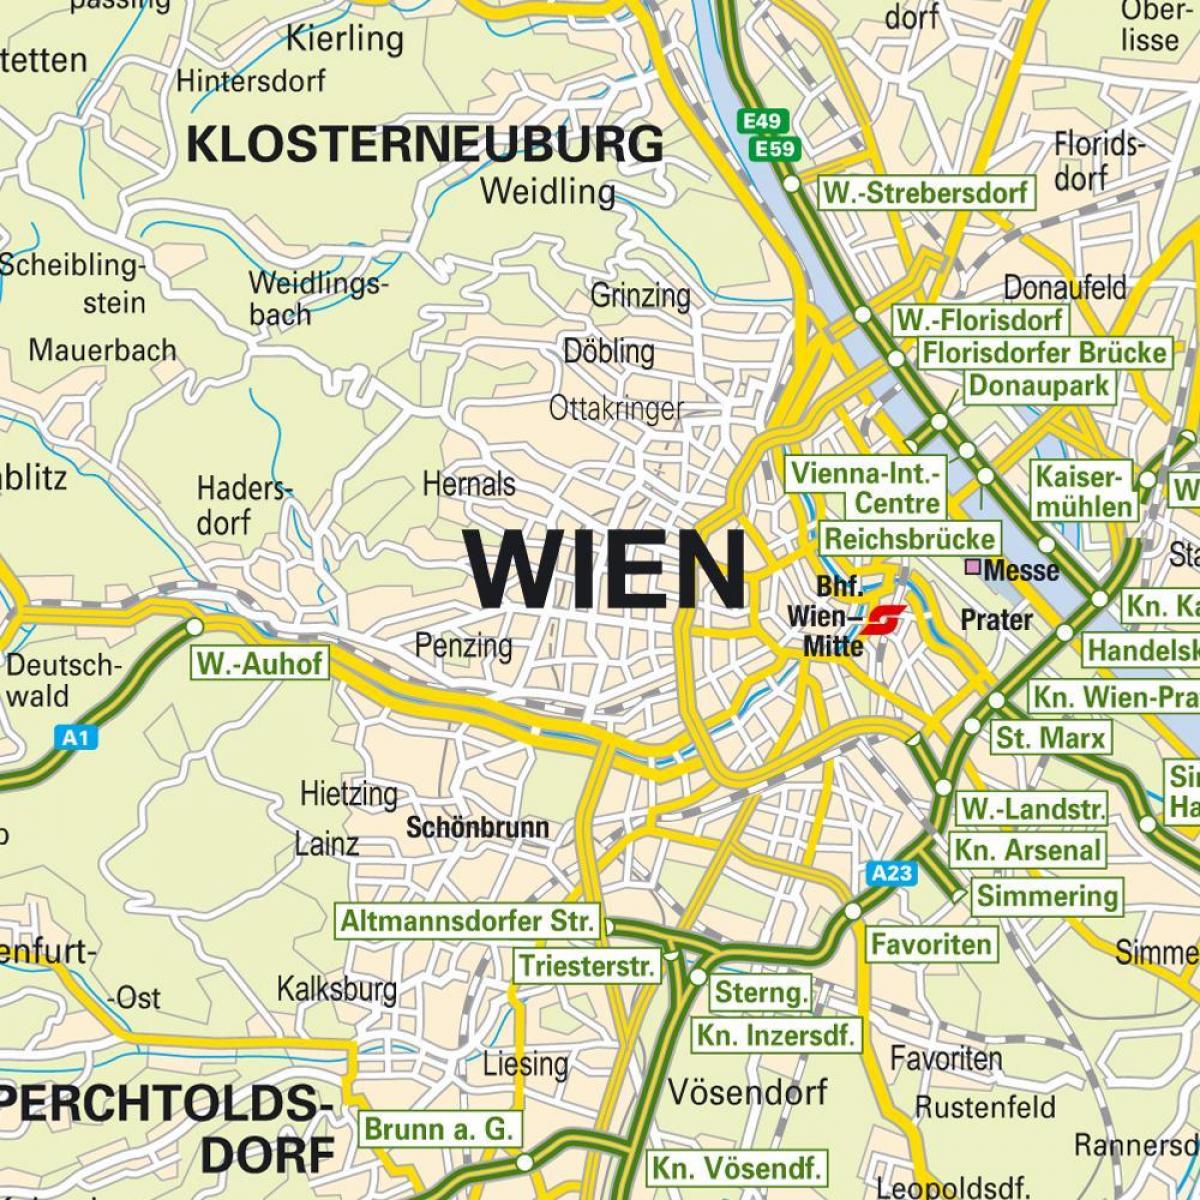 мапата покажувајќи Виена